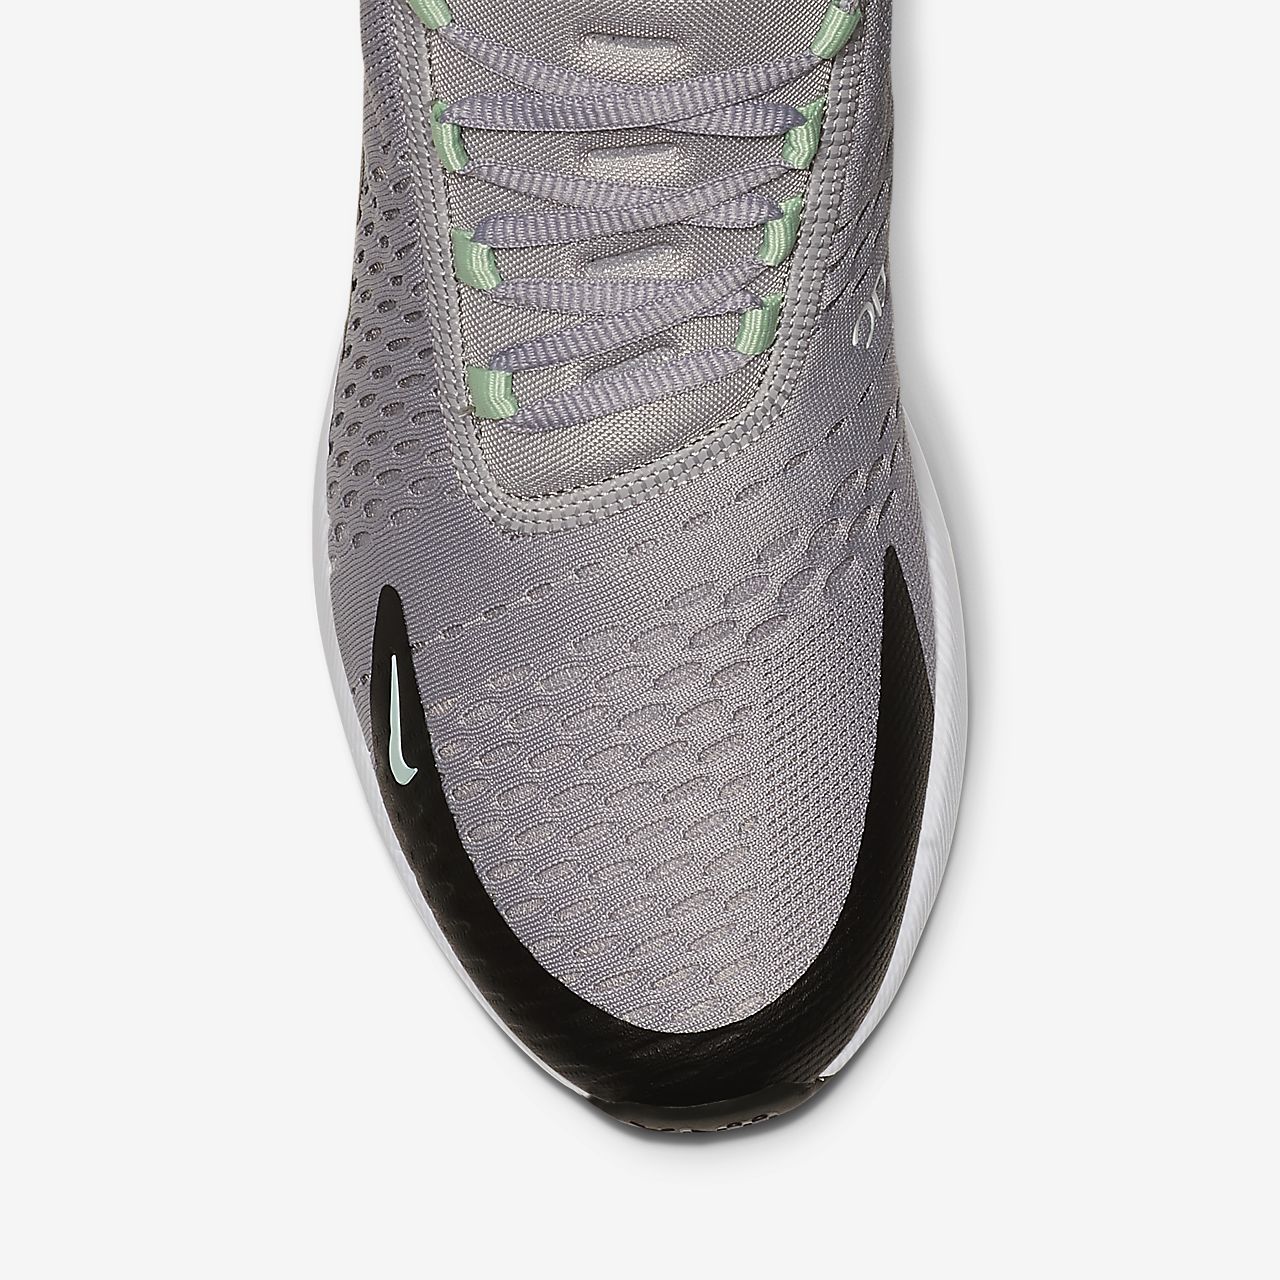 Nike Air Max 270 - Sneakers - Grå/Mintgrønne/Sort/Hvide | DK-26051